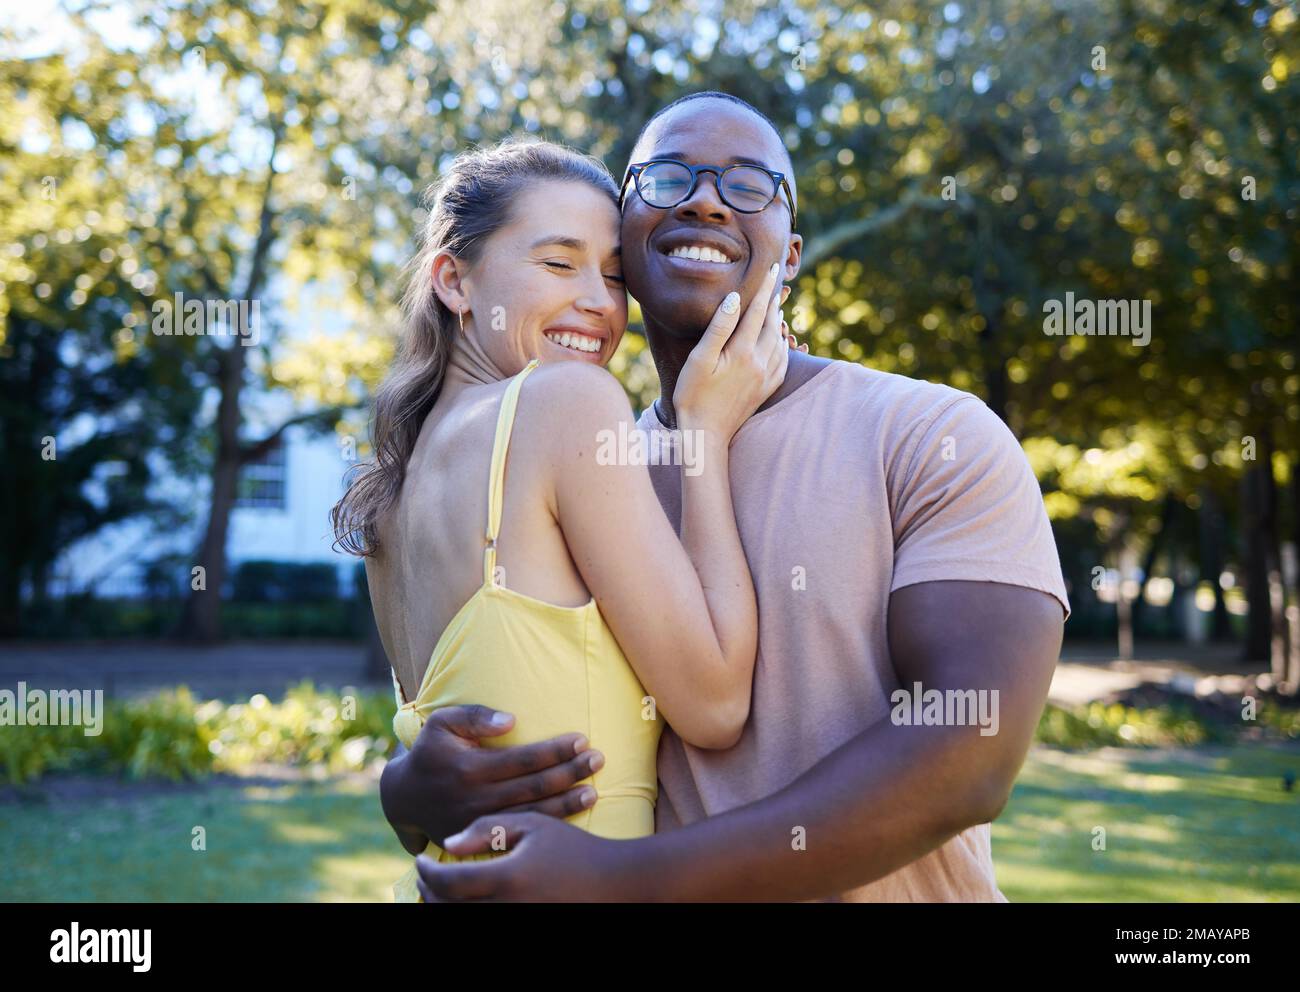 Liebe, zwischenmenschliche und Paare umarmen sich im Park, Verbundenheit und Glück für Romantik, Wellness und eine schöne Zeit zusammen. Romantisch, schwarzer Mann und Frau umarmen sich Stockfoto